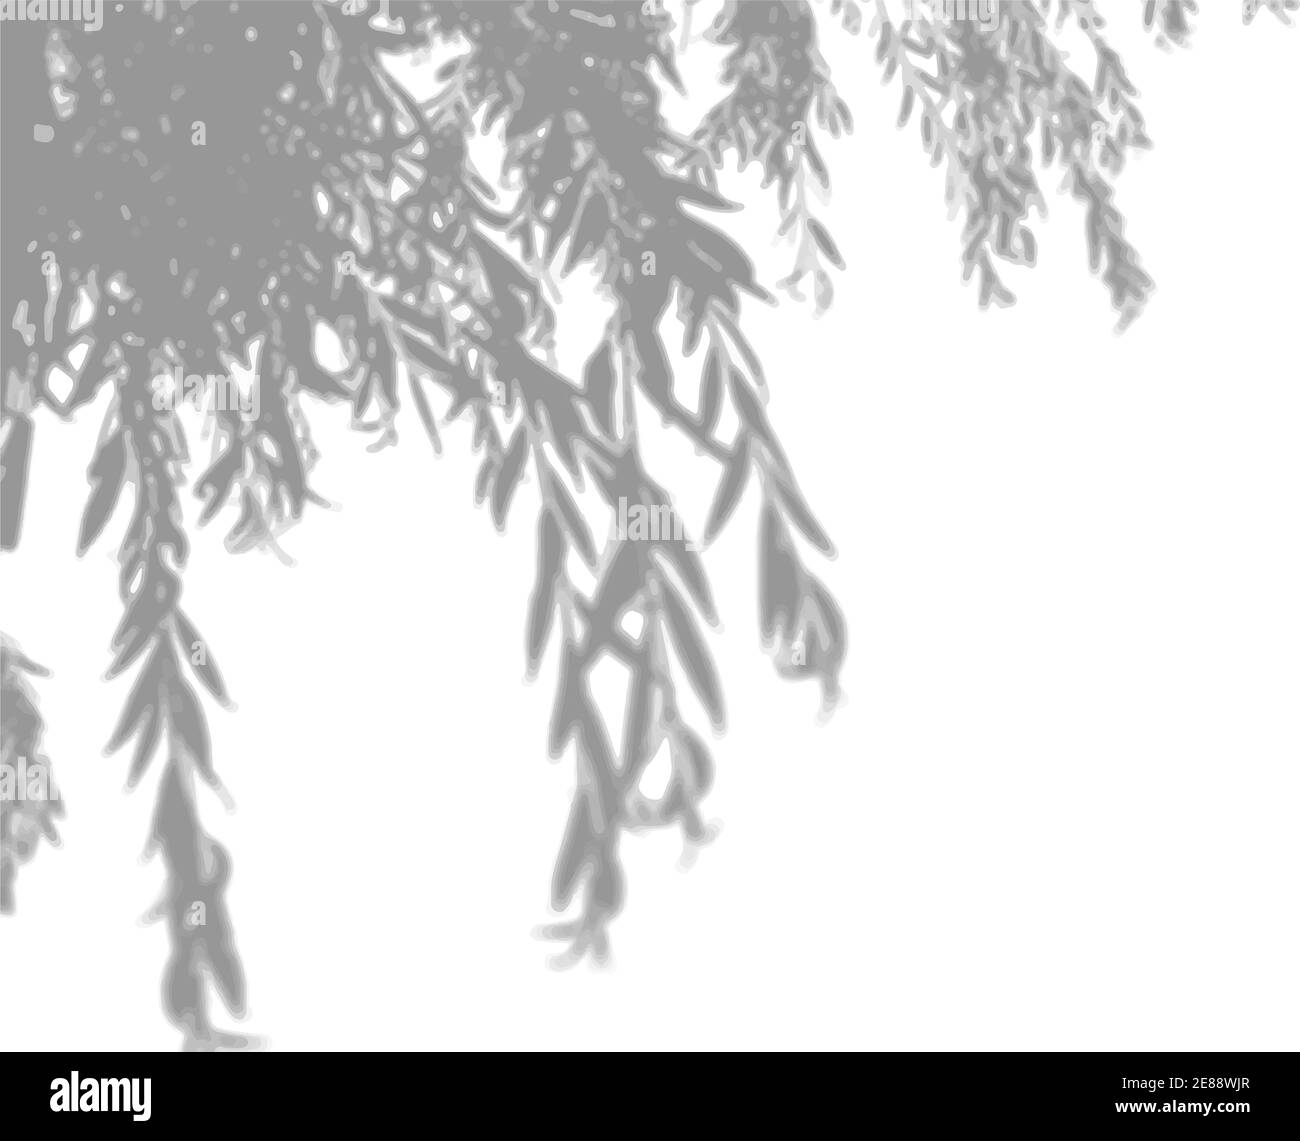 La luce naturale diffonde ombre da uno sfondo bianco isolato di un ramo salice oa. Effetto di sovrapposizione delle ombre Illustrazione Vettoriale